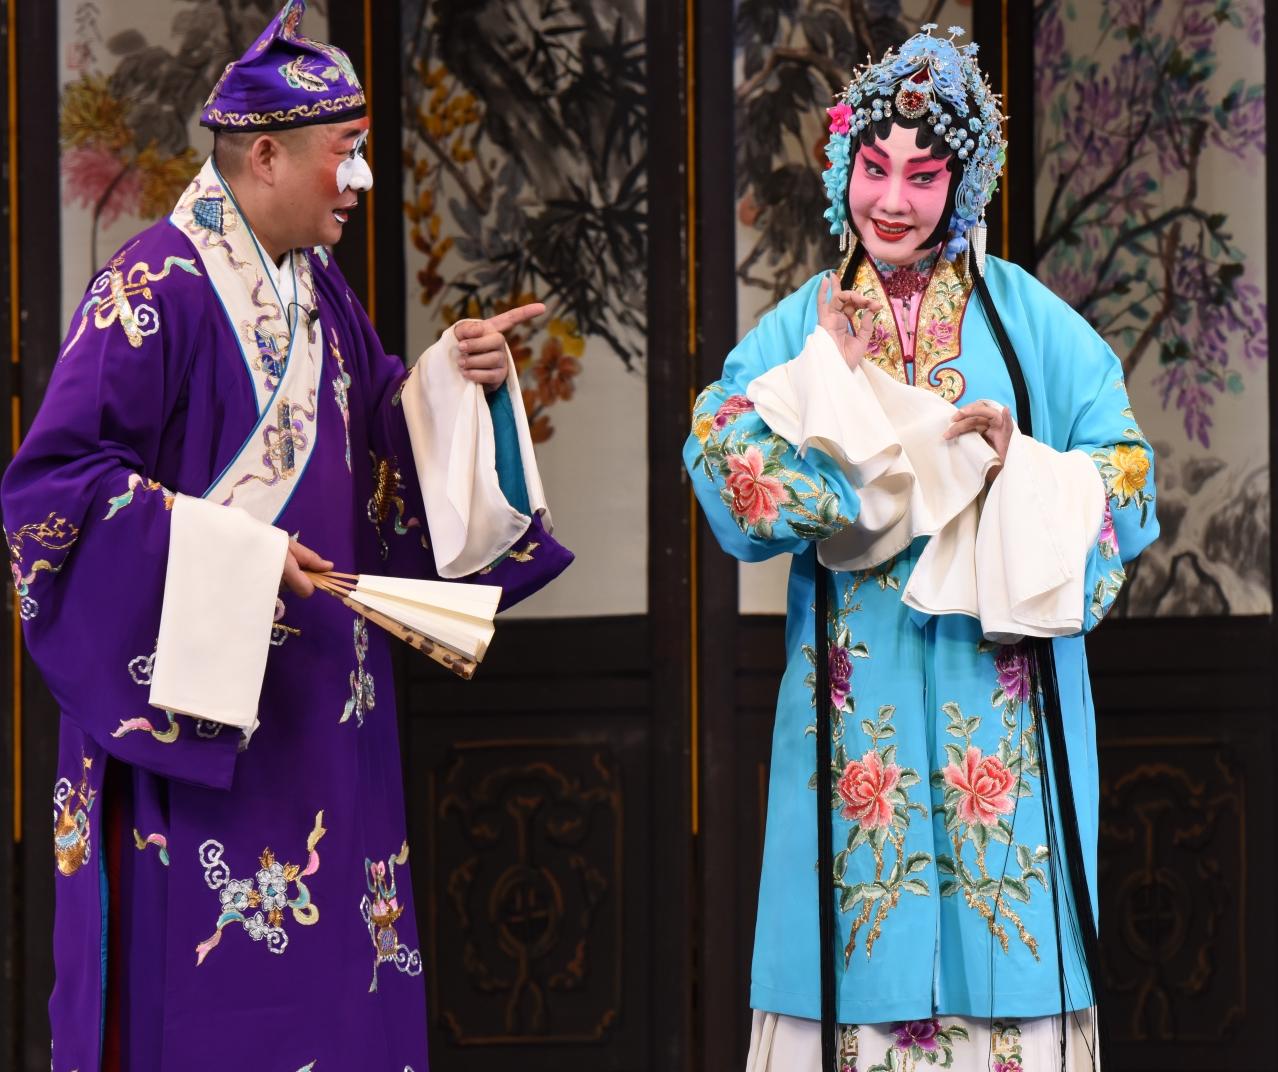 康乐及文化事务署邀得北京京剧院六月中旬来港，献演三场京剧艺术大师张君秋的青衣流派经典剧目作为今年中国戏曲节的开幕节目。图为《诗文会》剧照。